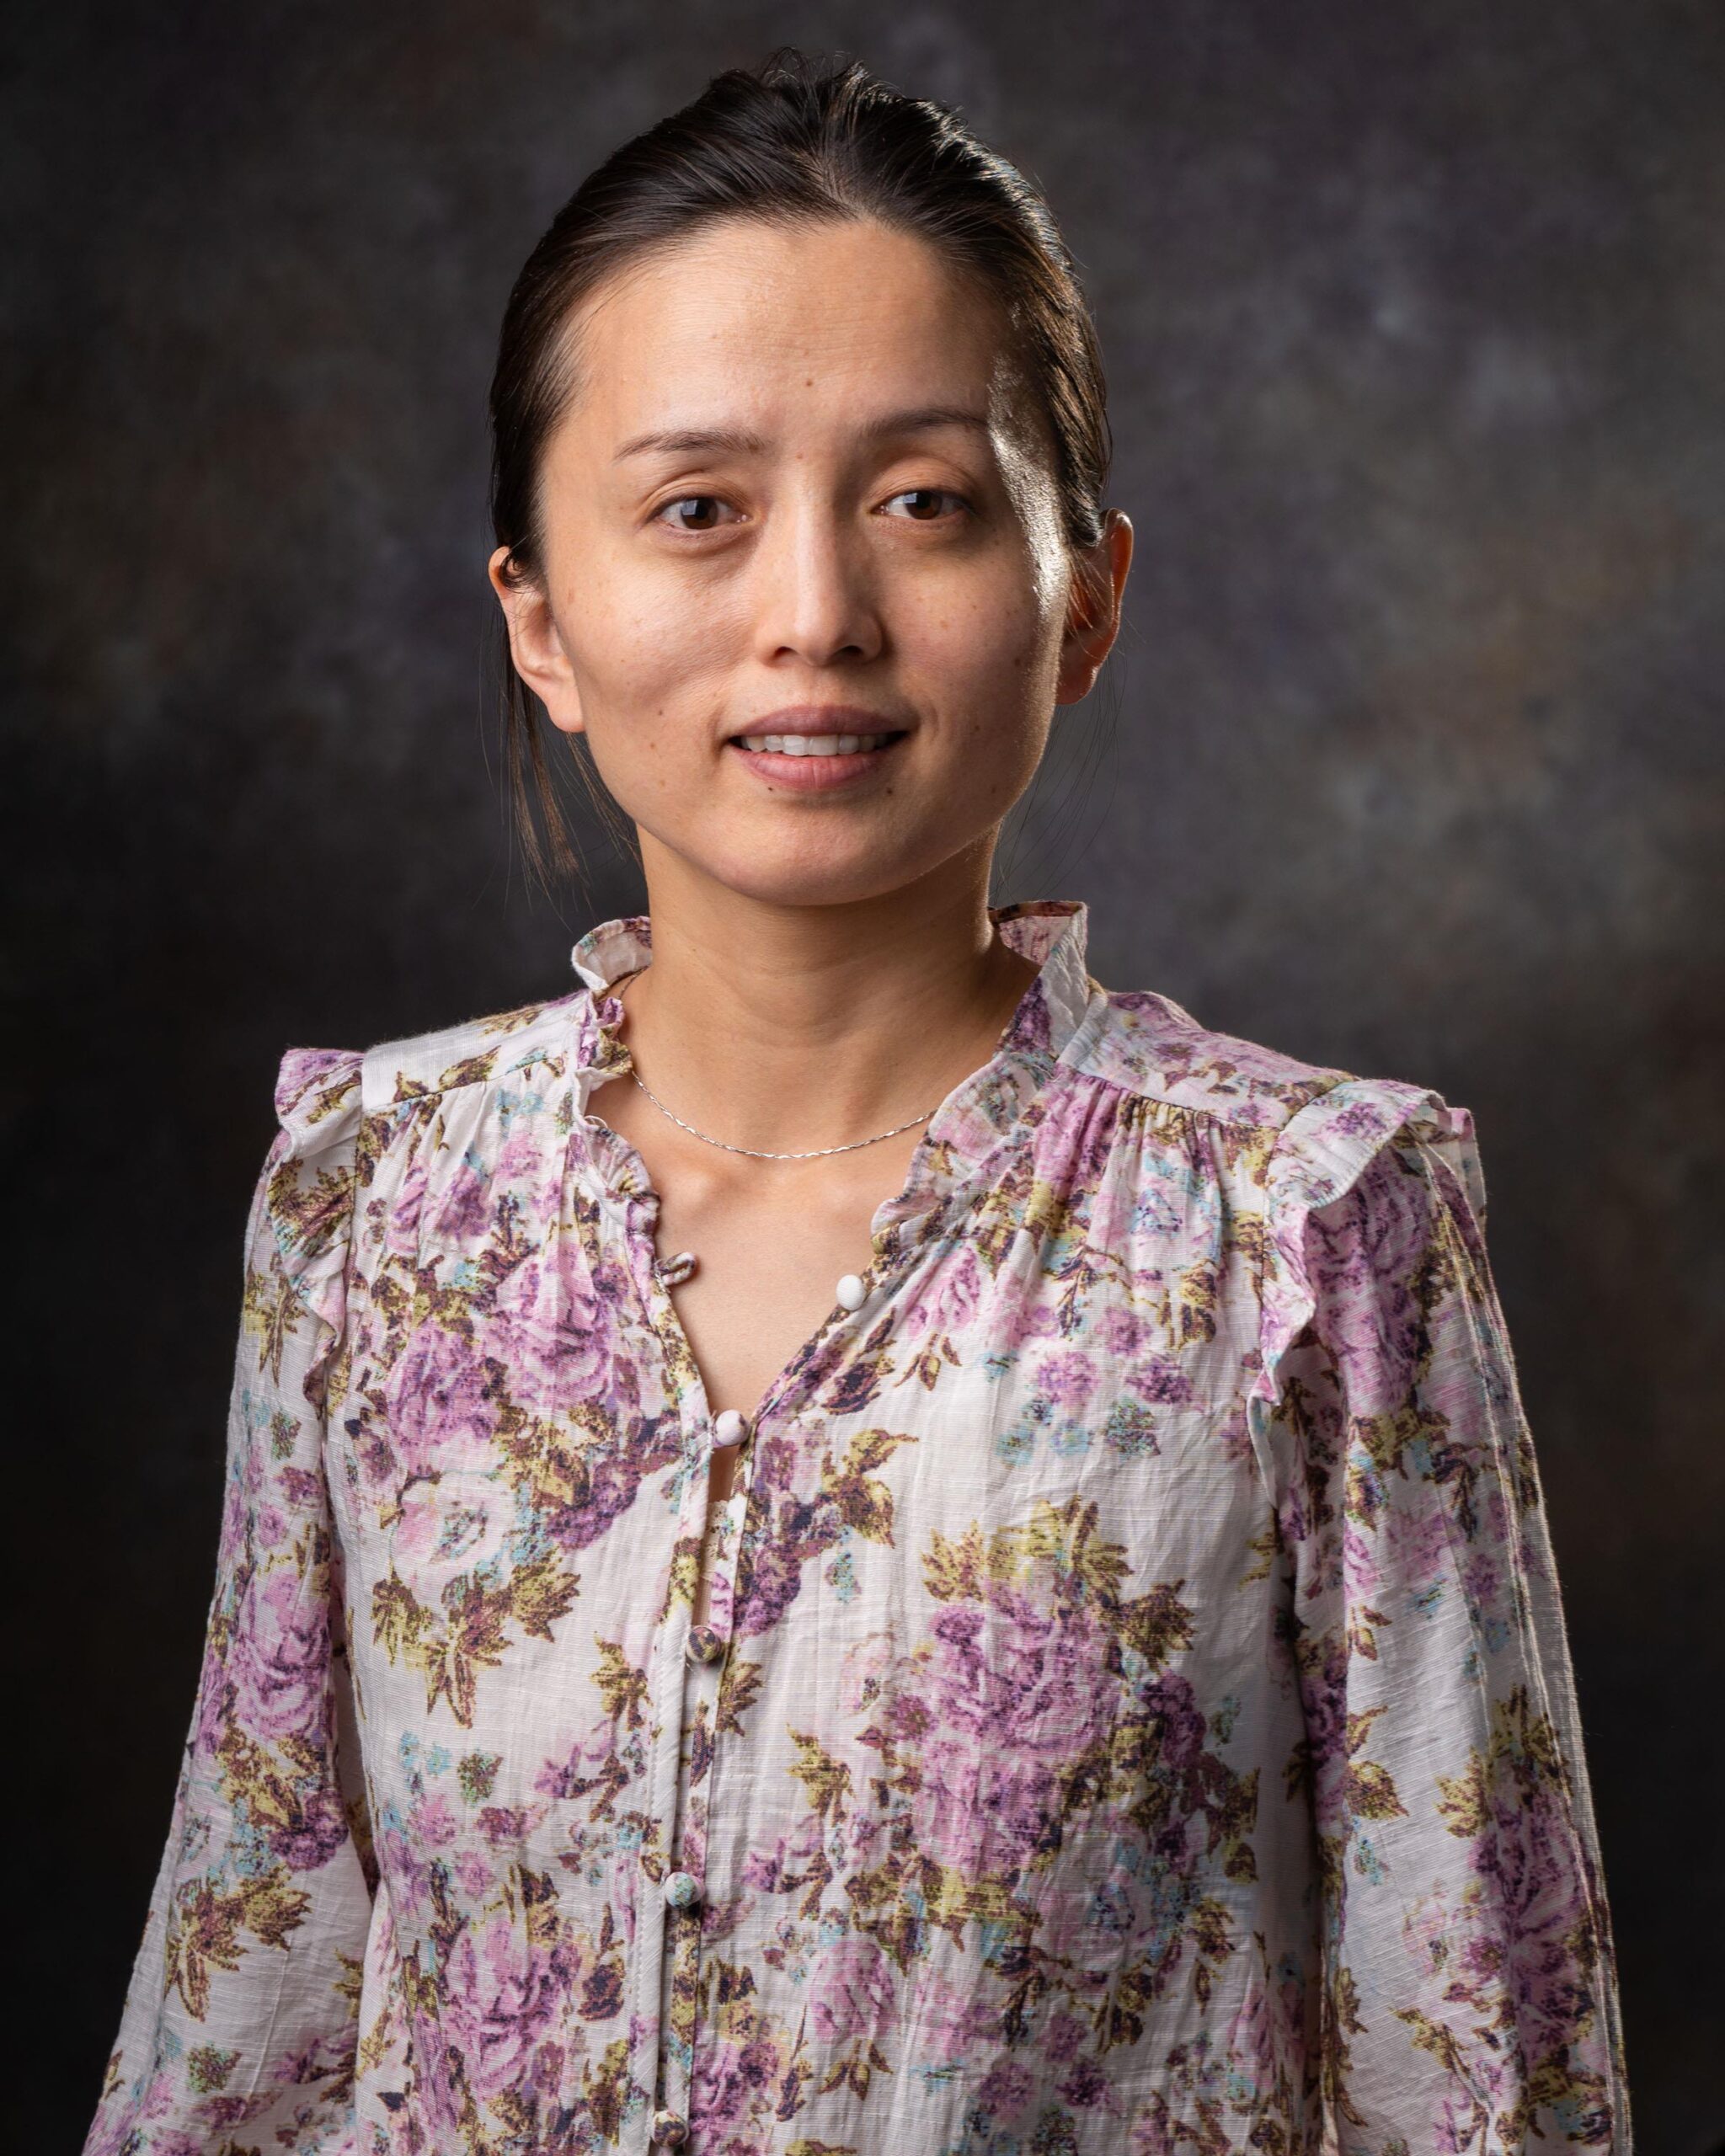 Assistant Professor Qiong Liu